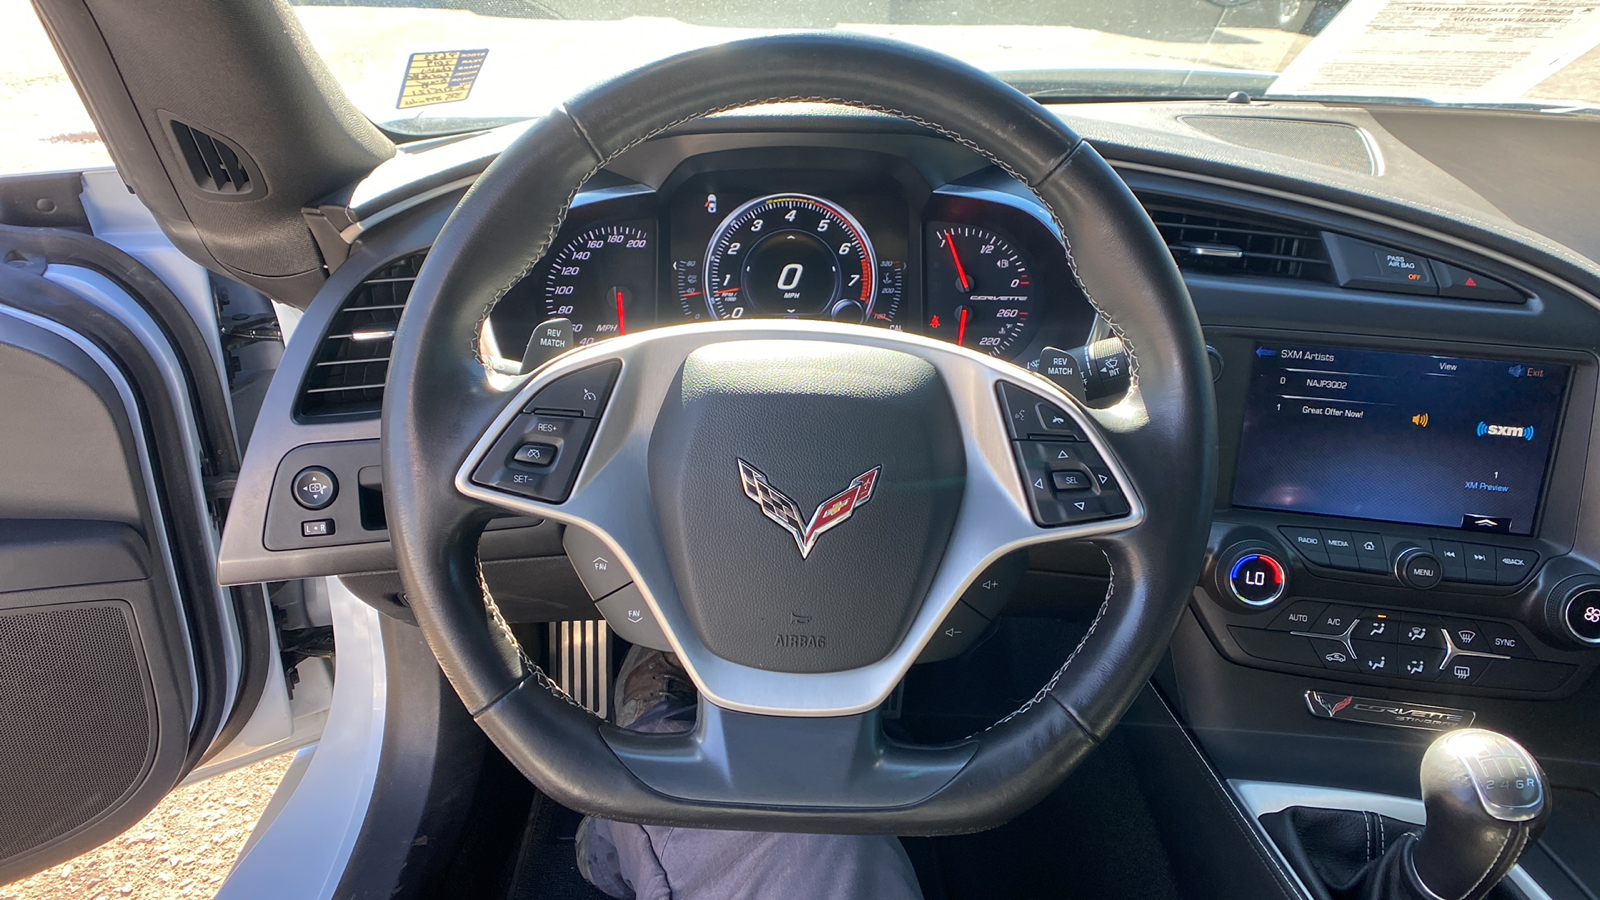 2019 Chevrolet Corvette 2dr Stingray Cpe w/1LT 20